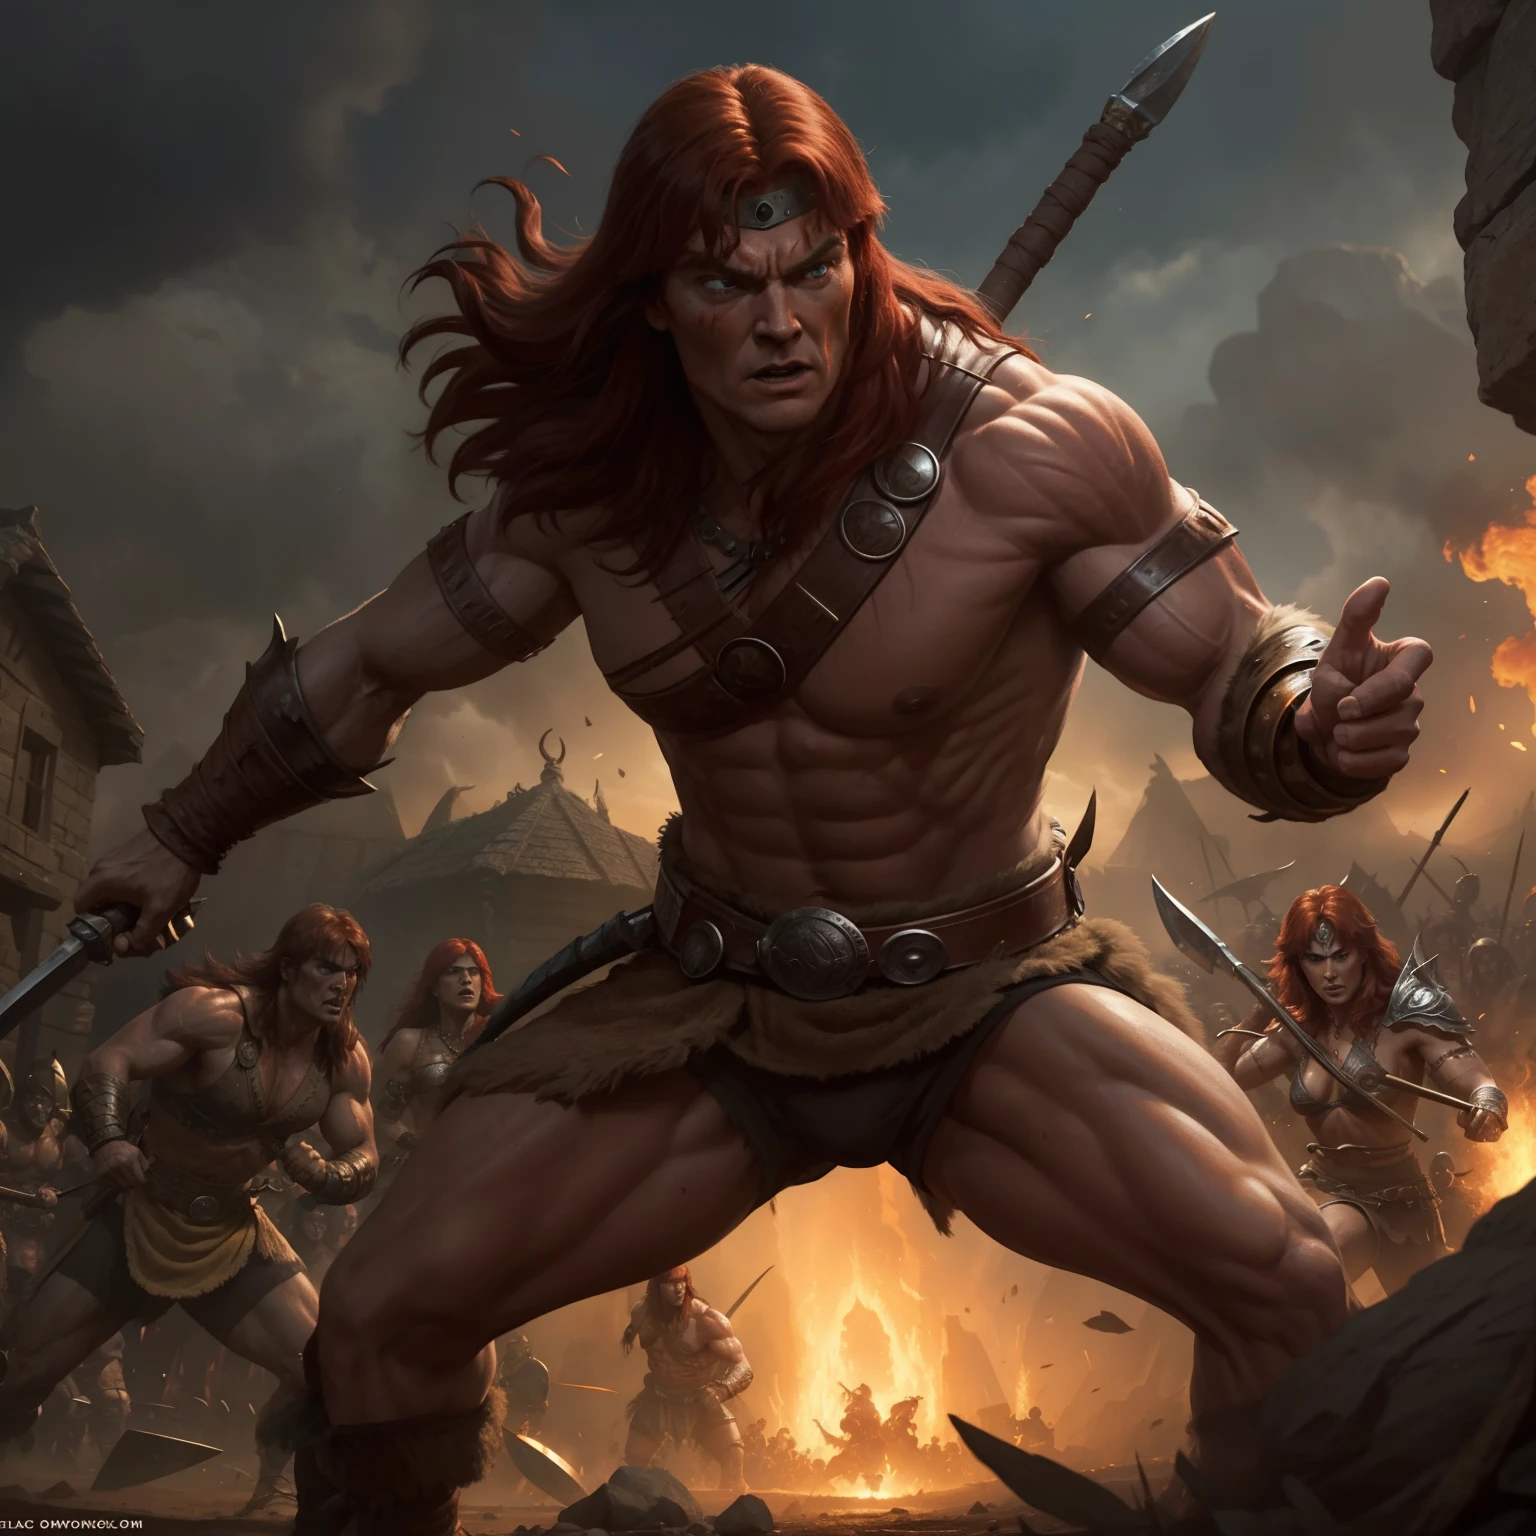 Conan y Red Sonja en una aldea cimmeria en una escena de batalla épica, con la aparición de personajes inspirados en los cómics.